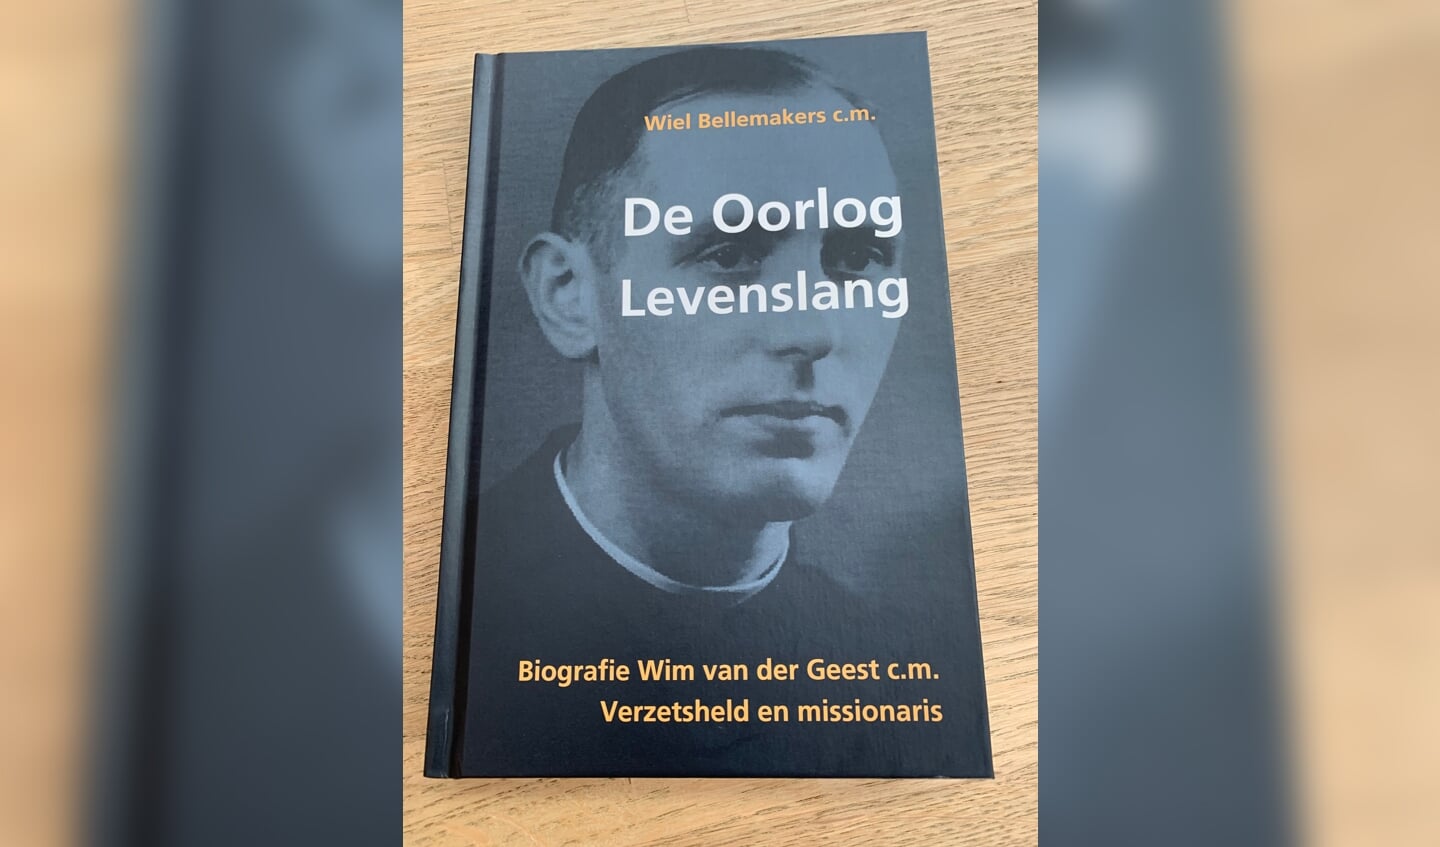 De biografie over Wim van der Geest.